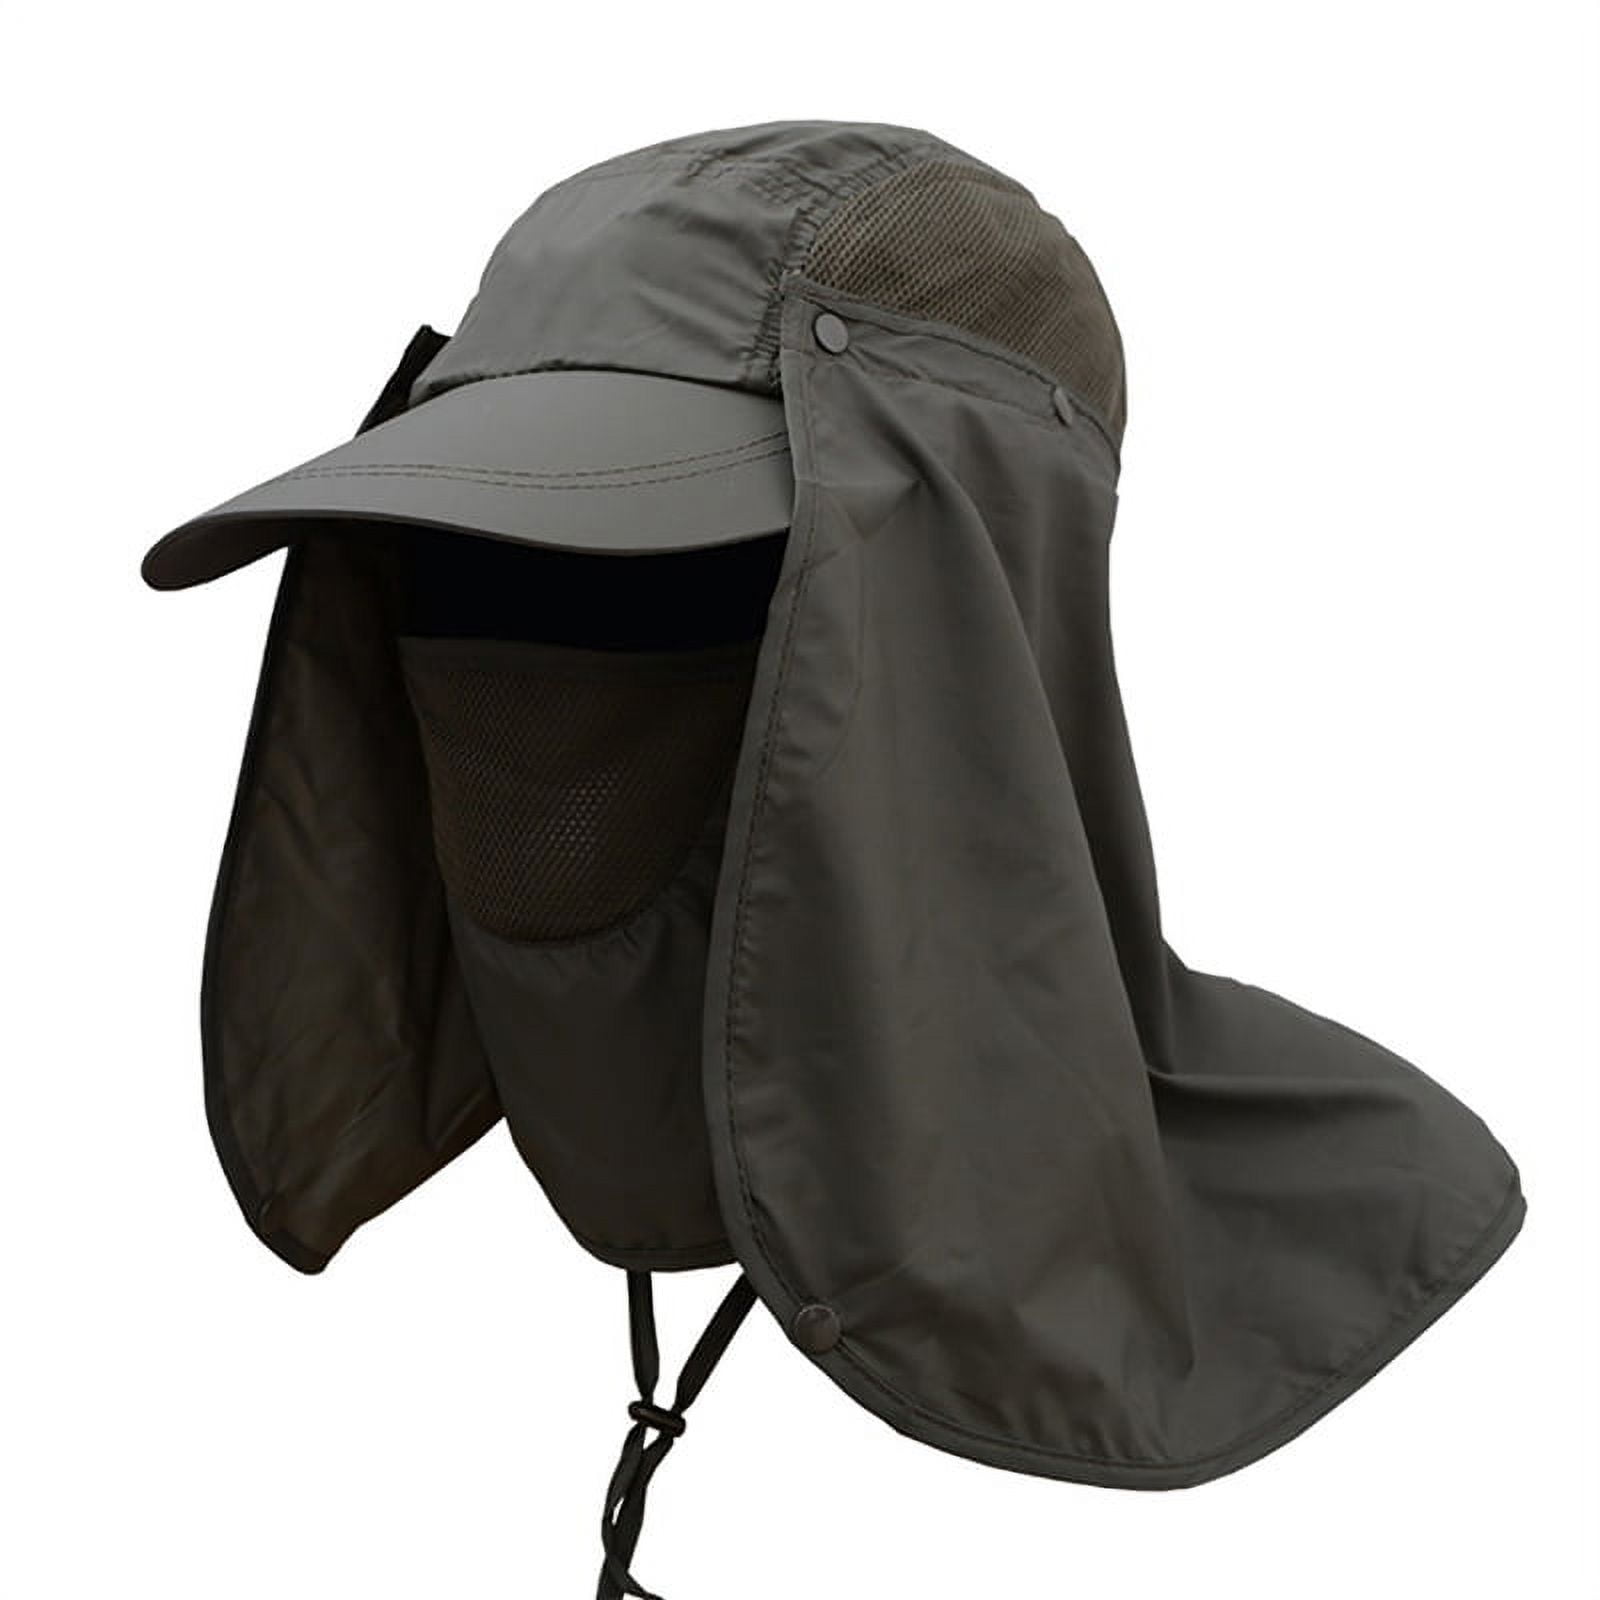 Unisex Sun Cap Fishing Hats, Outdoor 360° Sun Protection UPF 50+